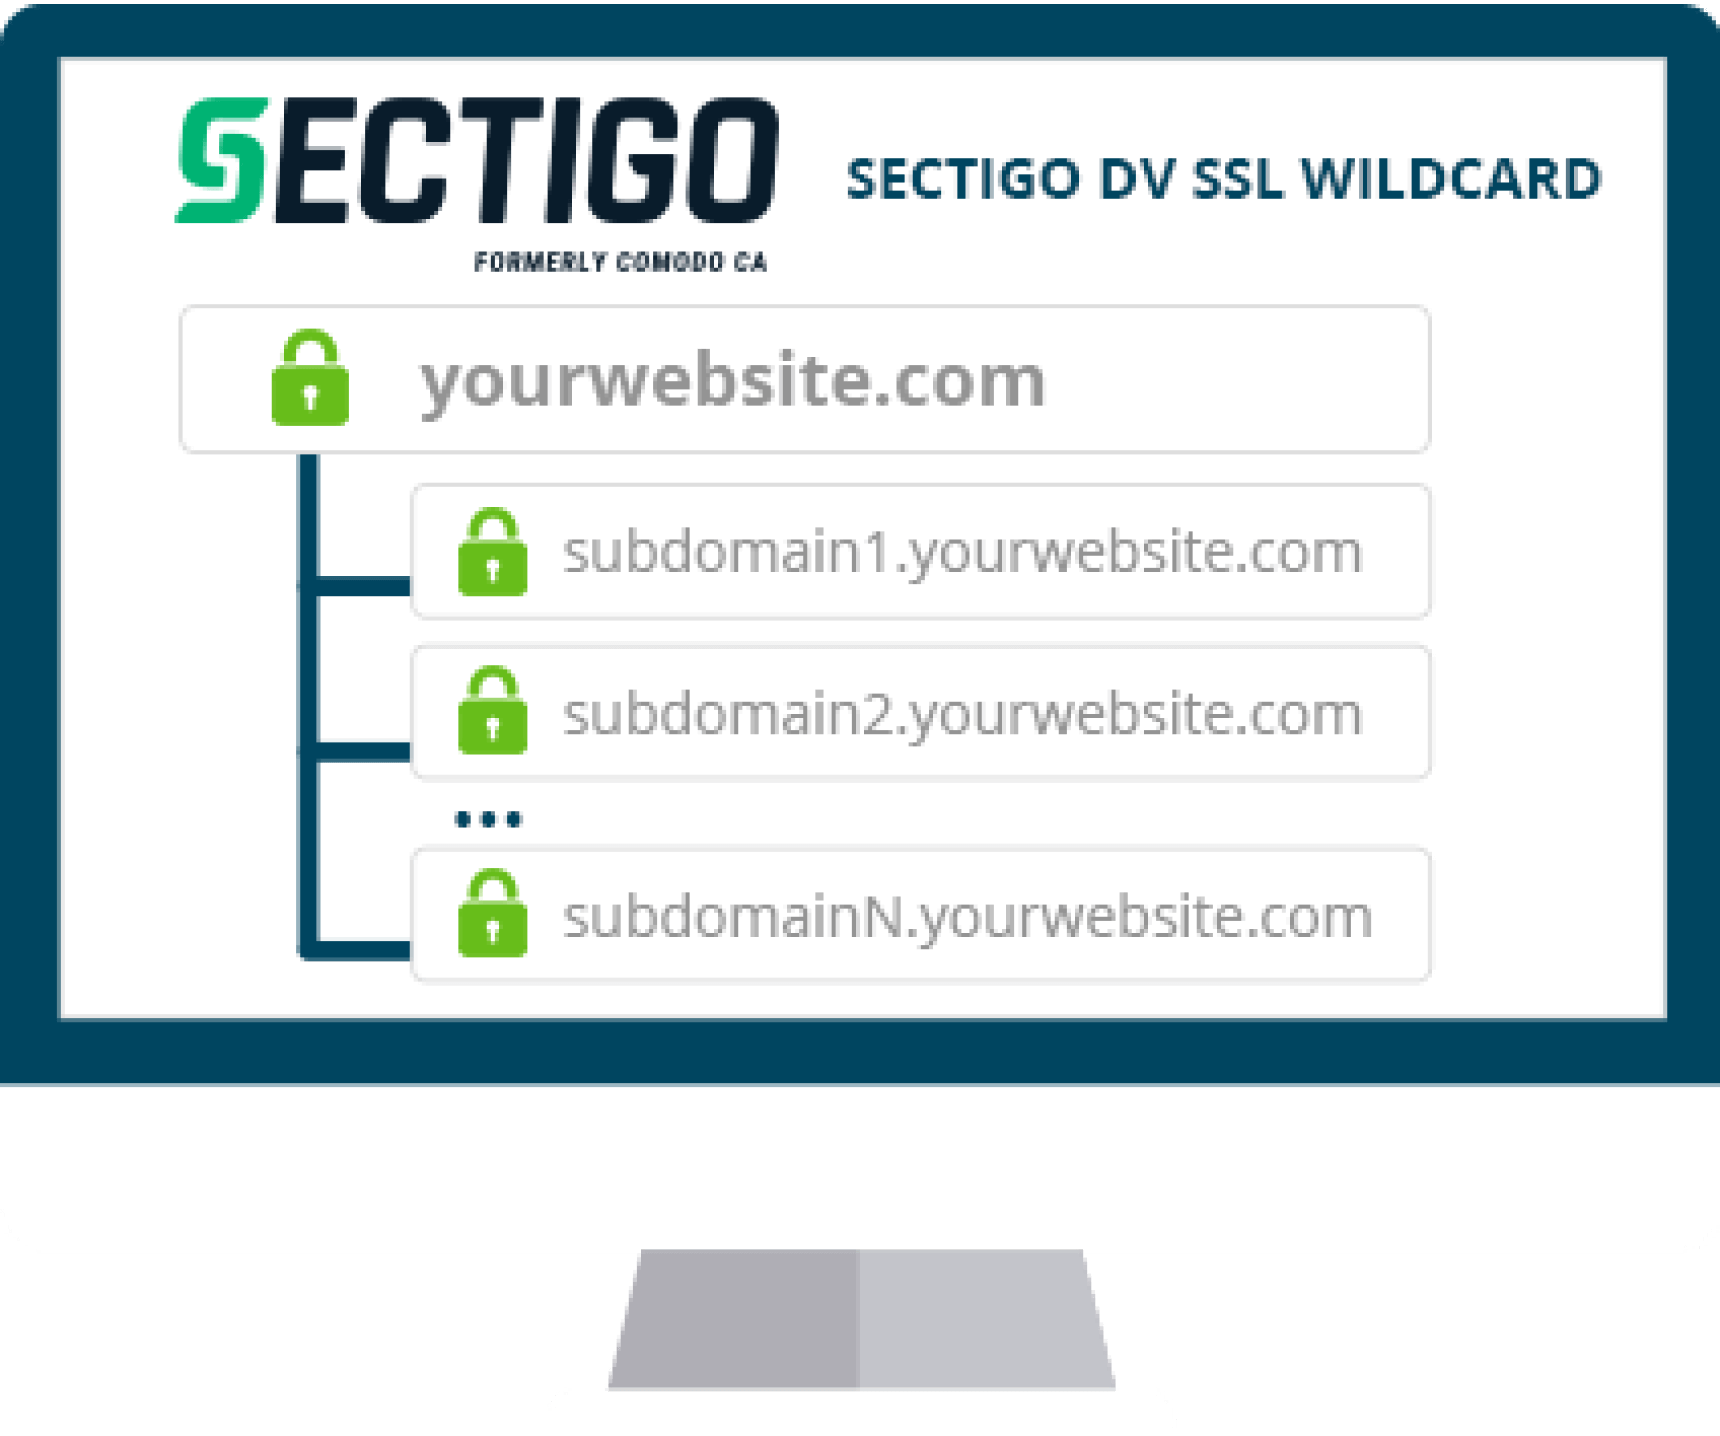 Sectigo DV SSL Wildcard